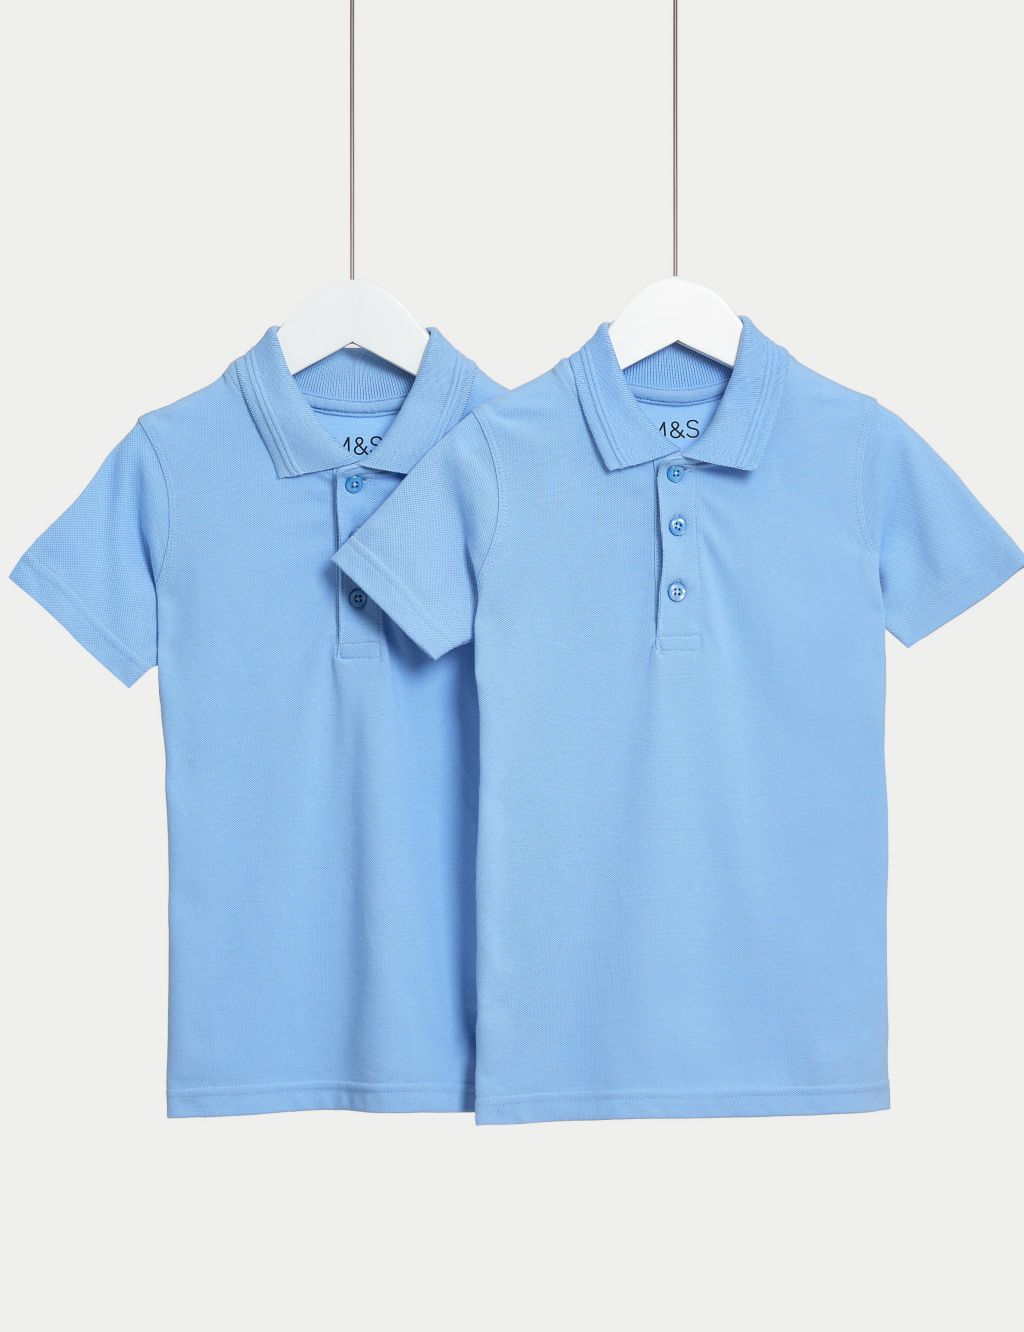 2pk Boys' Slim Fit School Polo Shirts (2-16 Yrs) image 1